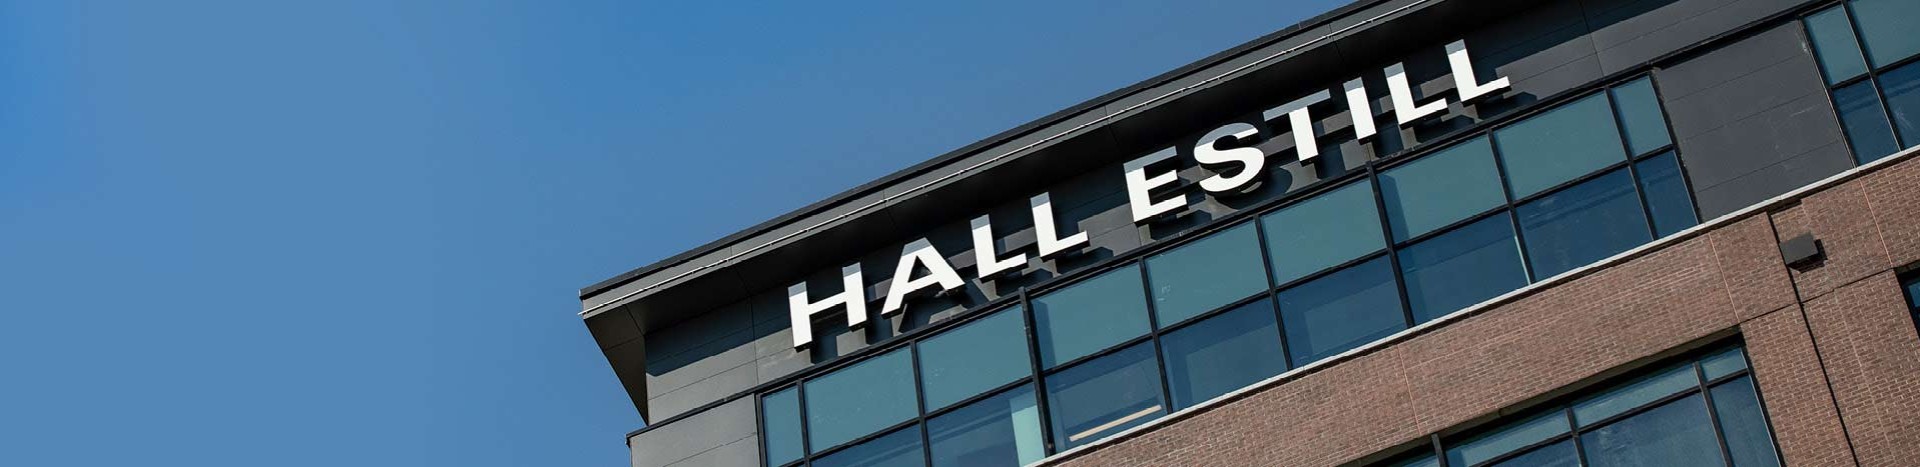 Hall Estill Building